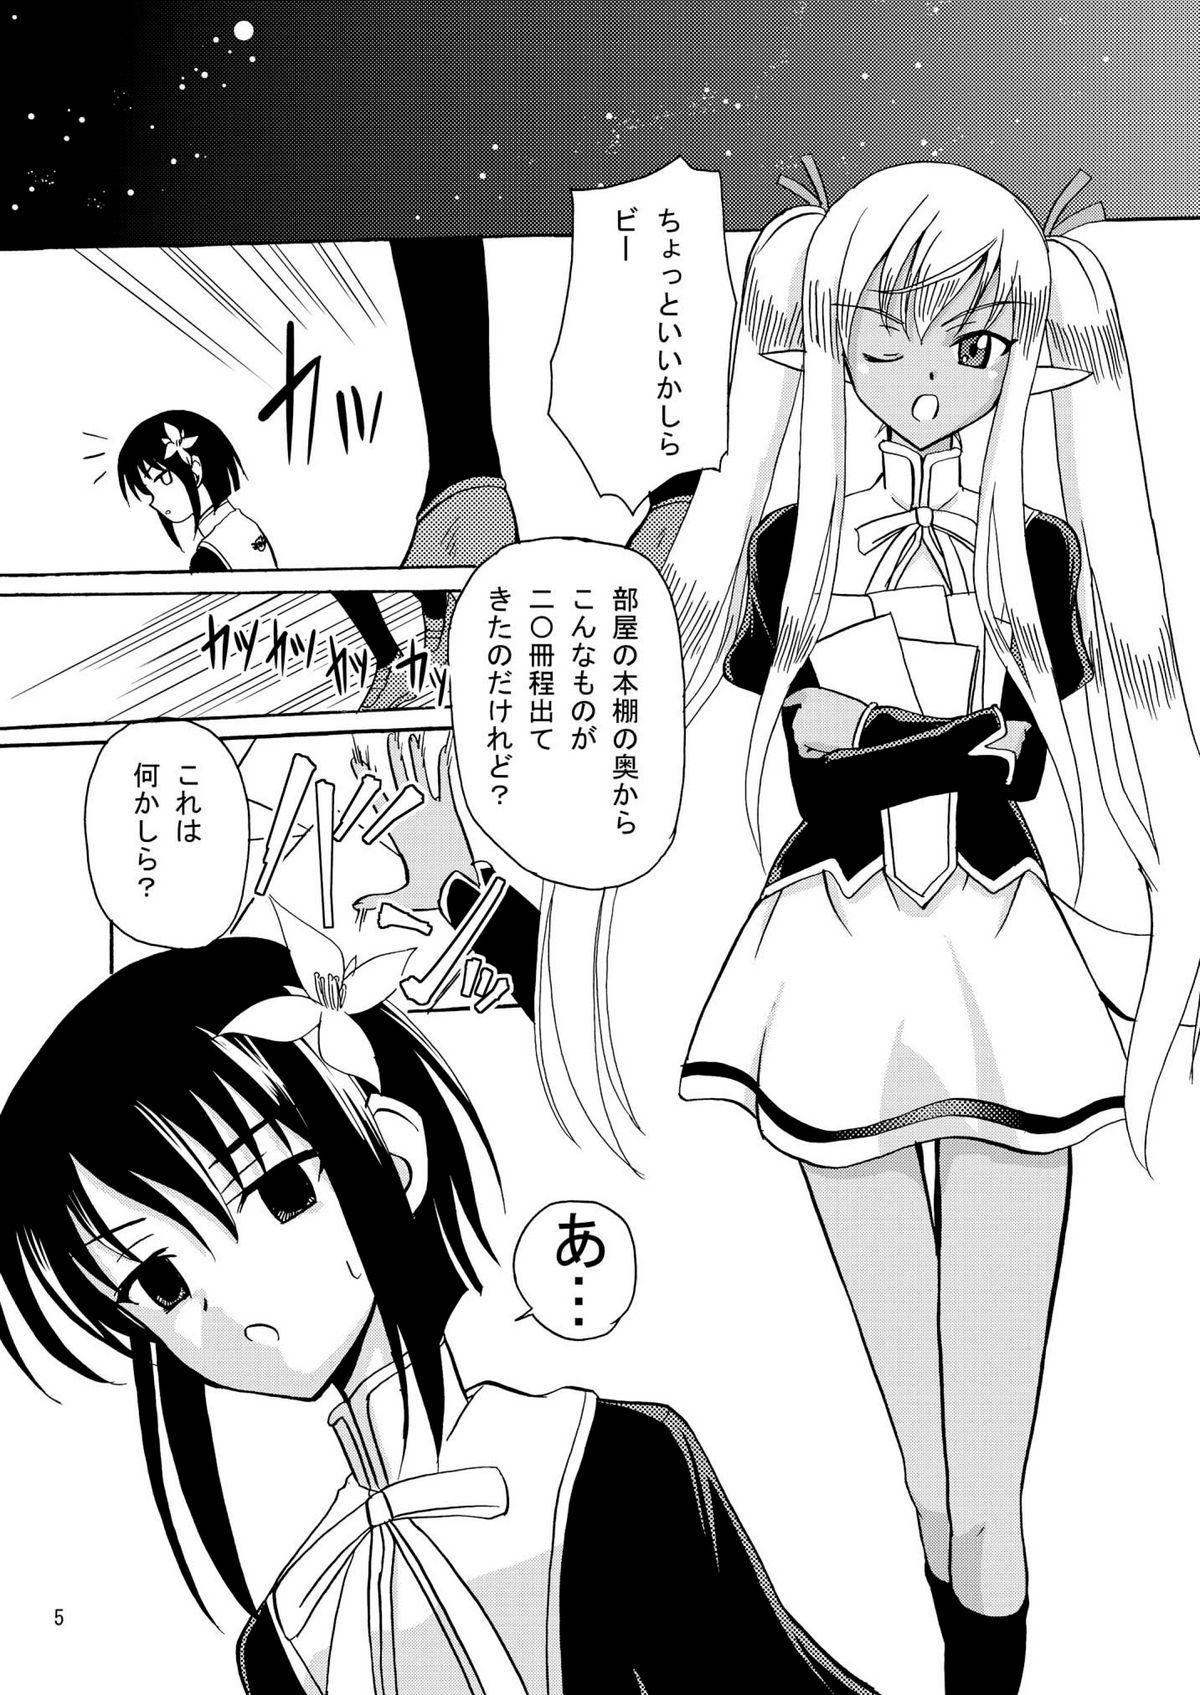 Spy Cam ARCANUMS 16 Junbigou - Mahou sensei negima Butt - Page 5